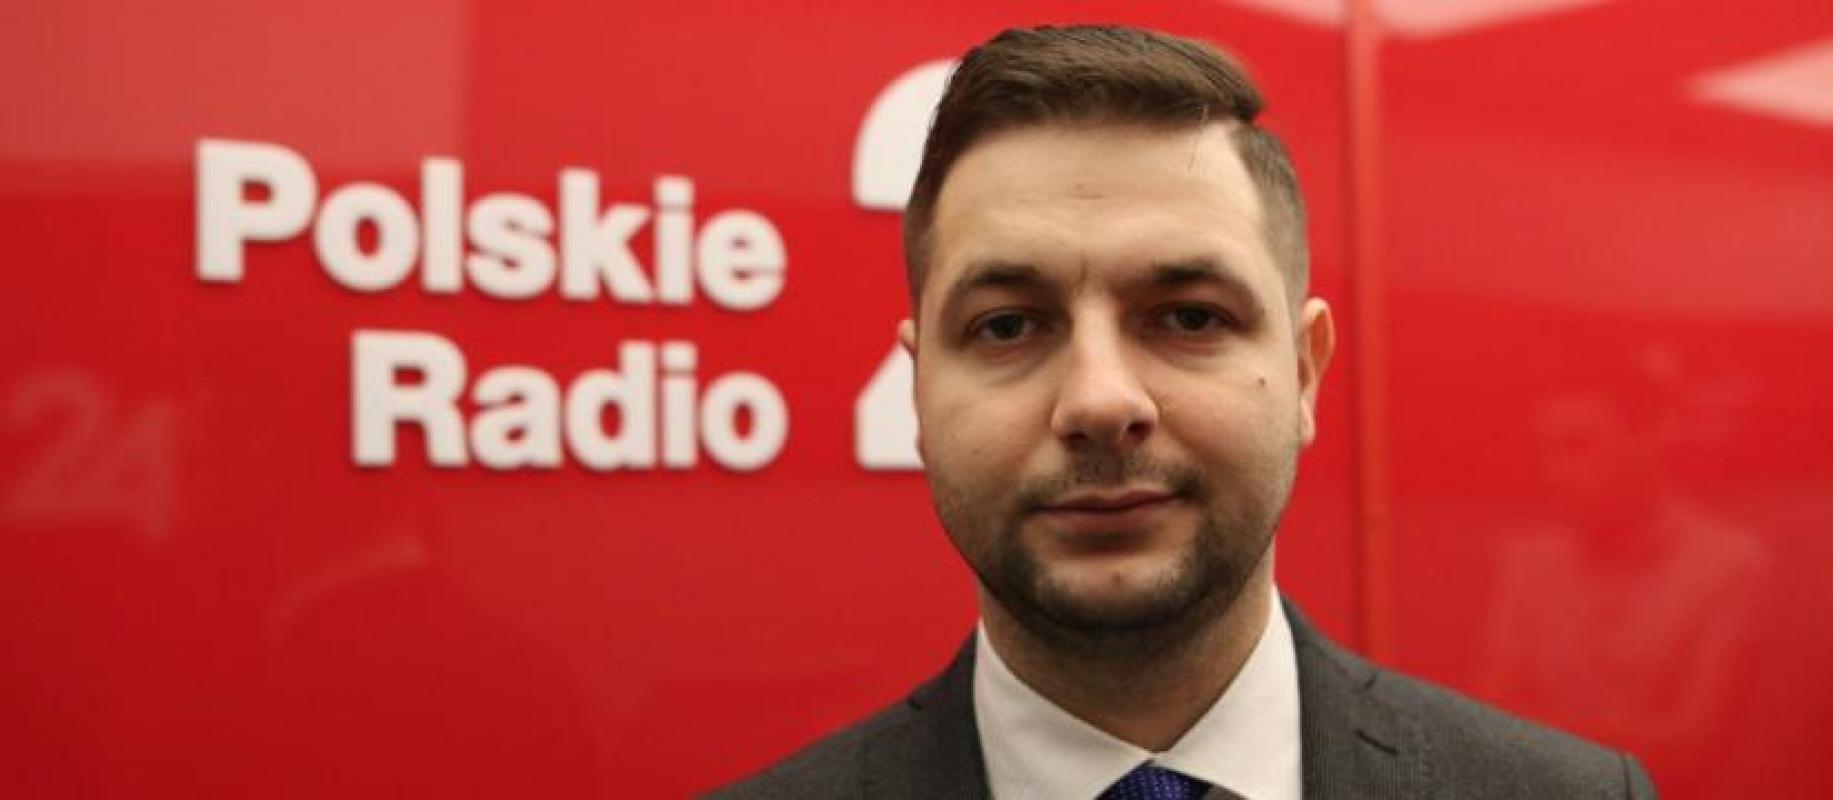 Lenkijos teisingumo viceministras: Puolimo prieš Lenkiją priežastis ne teismų reforma, o atsisakymas priimti imigrantus. Briuselio elitos - nevykėliai, kurie užsiima bananų ilgio matavimu ir nesugeba išspręsti nei vienos problemos